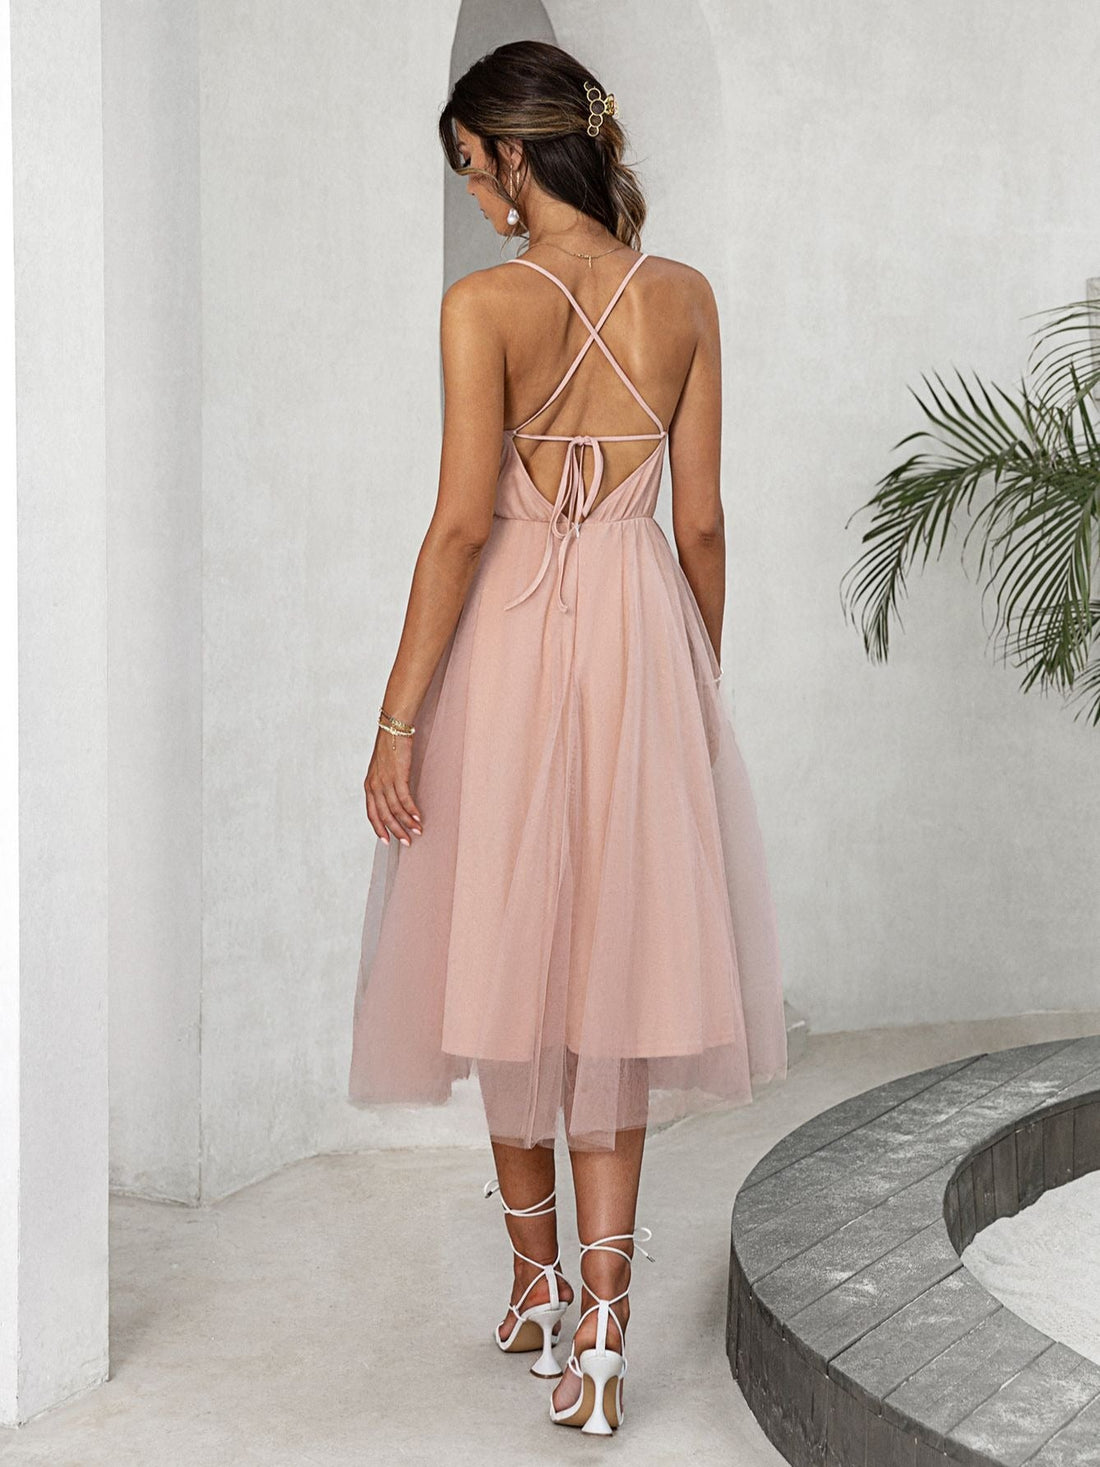 Women's Summer Lace Up Pink Dress